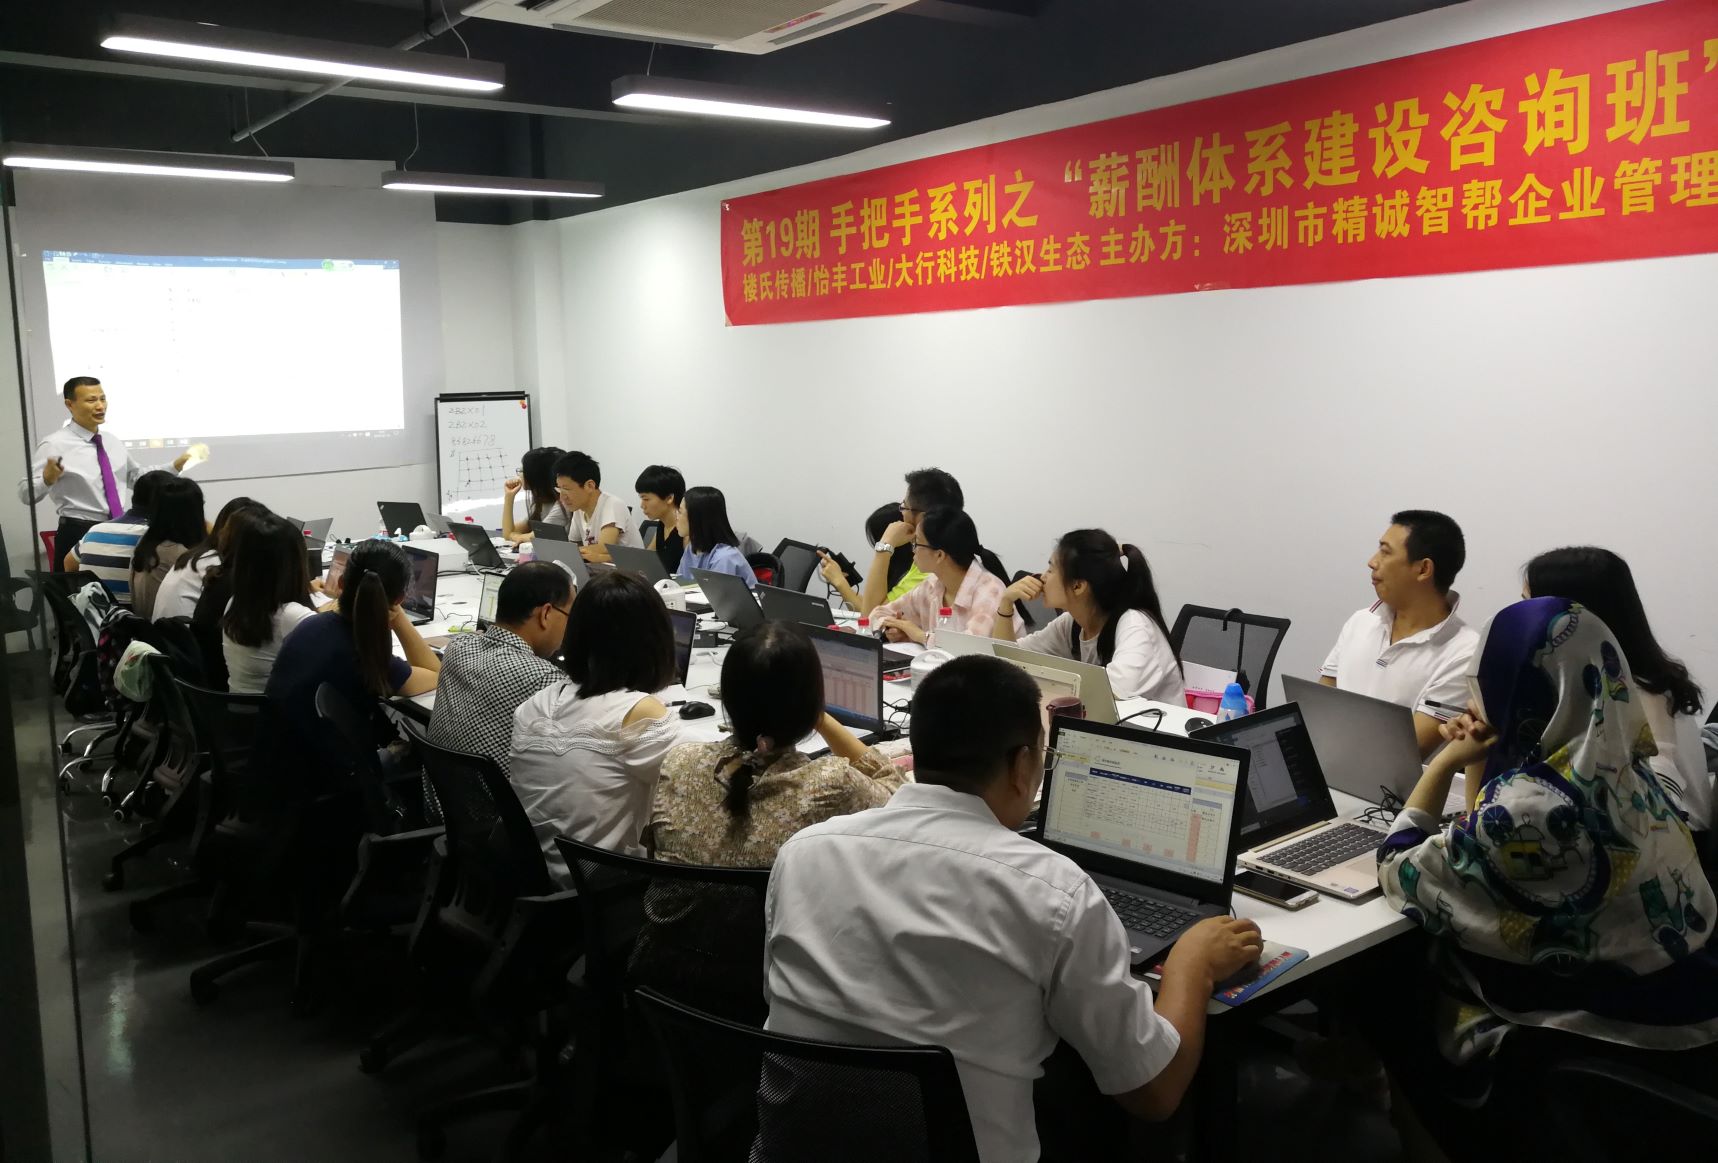 传授薪技术-19期战略薪酬课成功在深圳举办